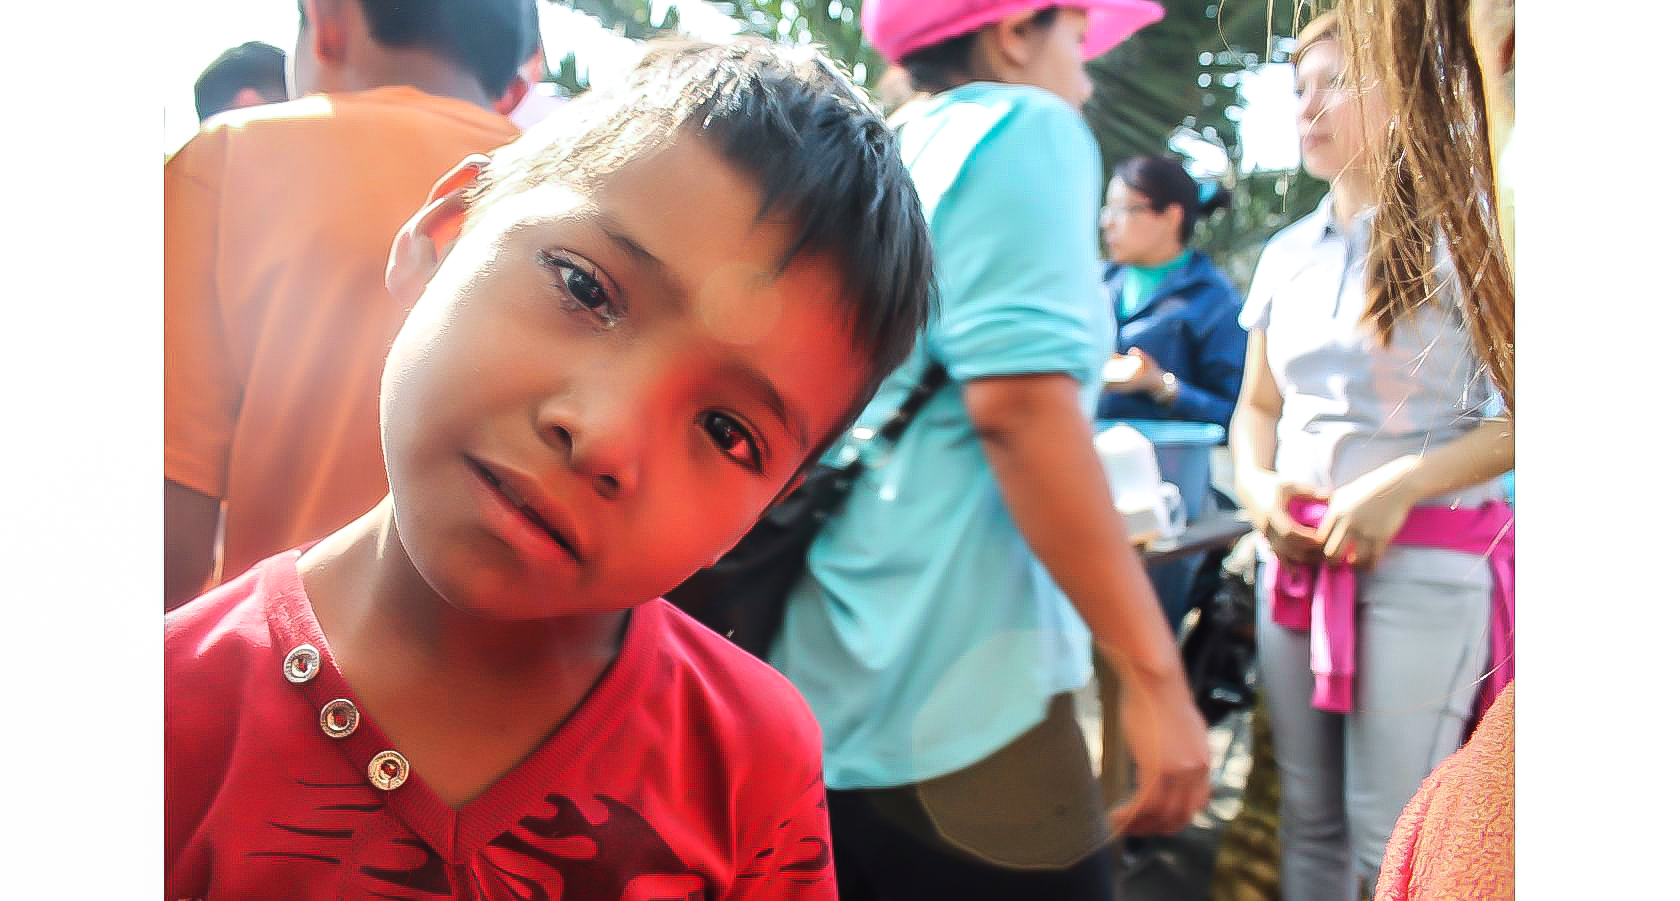 Un pequeño niño residente del basurero de Xochiaca mira con curiosidad la cámara fotográfica del reportero que visitó el lugar. Foto: Axel E. Núñez | Barriozona Magazine © 2016